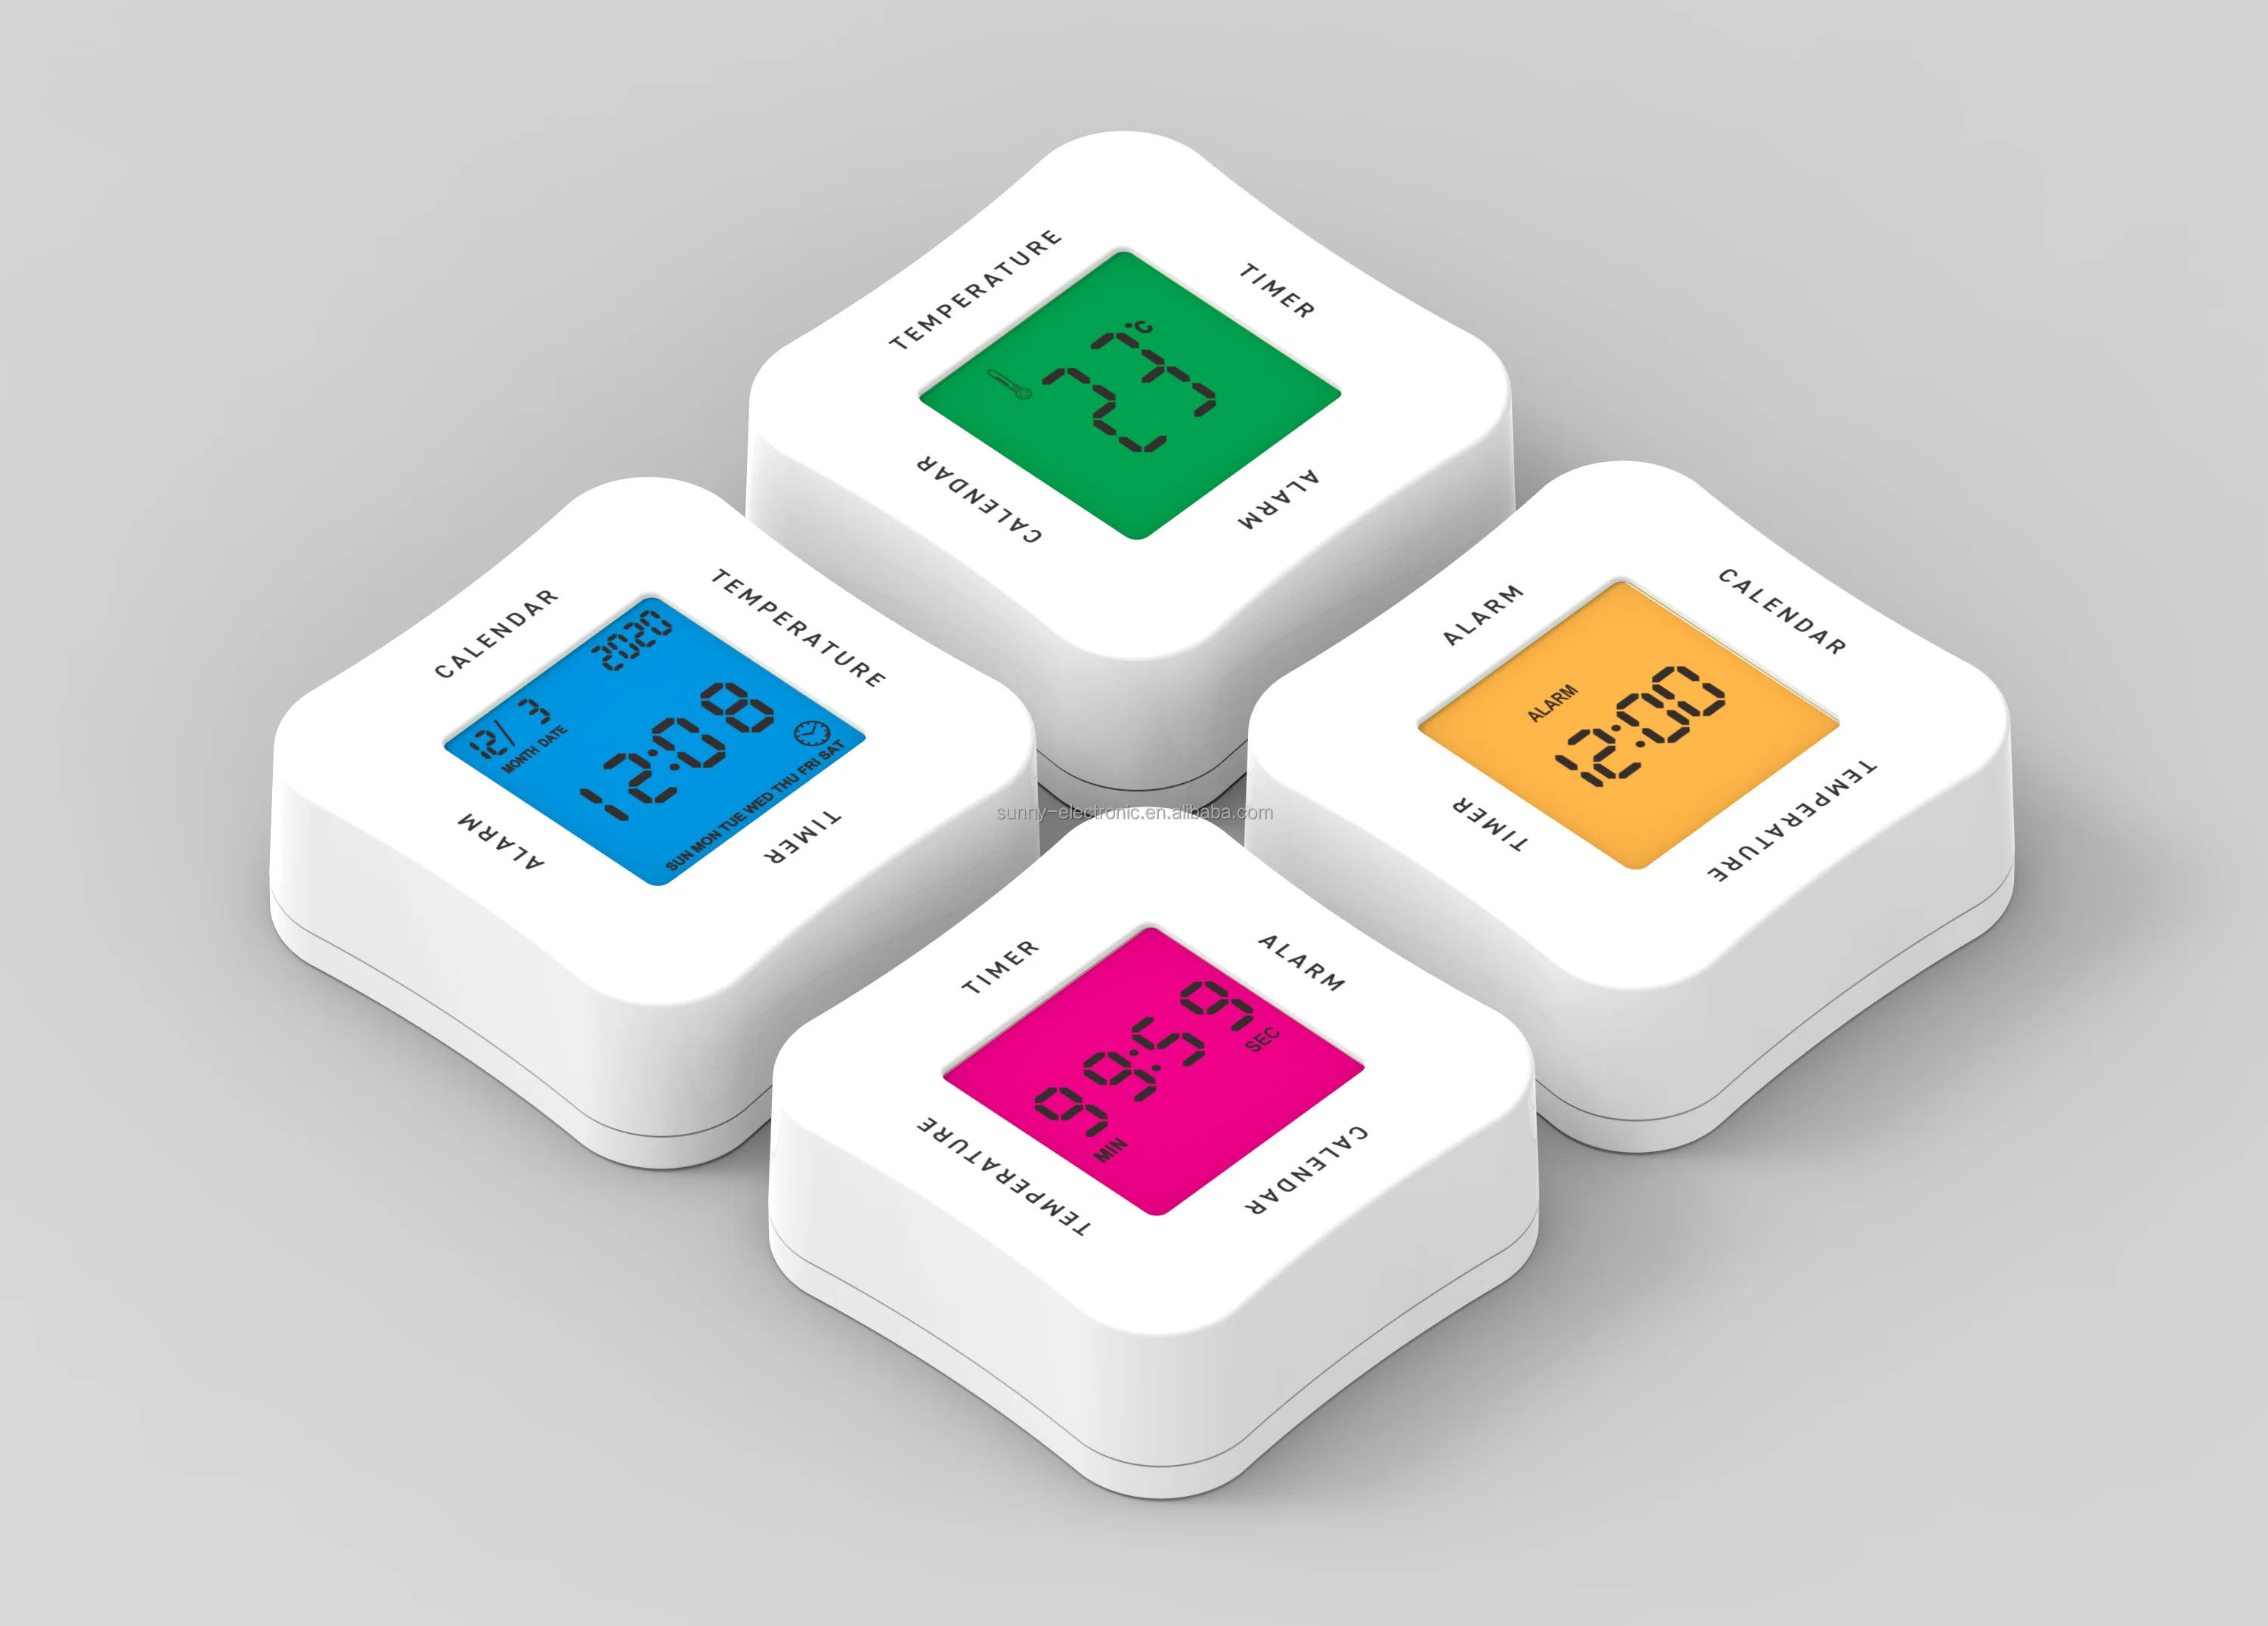 Multi-functional Digital Alarm Clock 4 in 1 Analog Table Alarm Clock Digital LCD Display